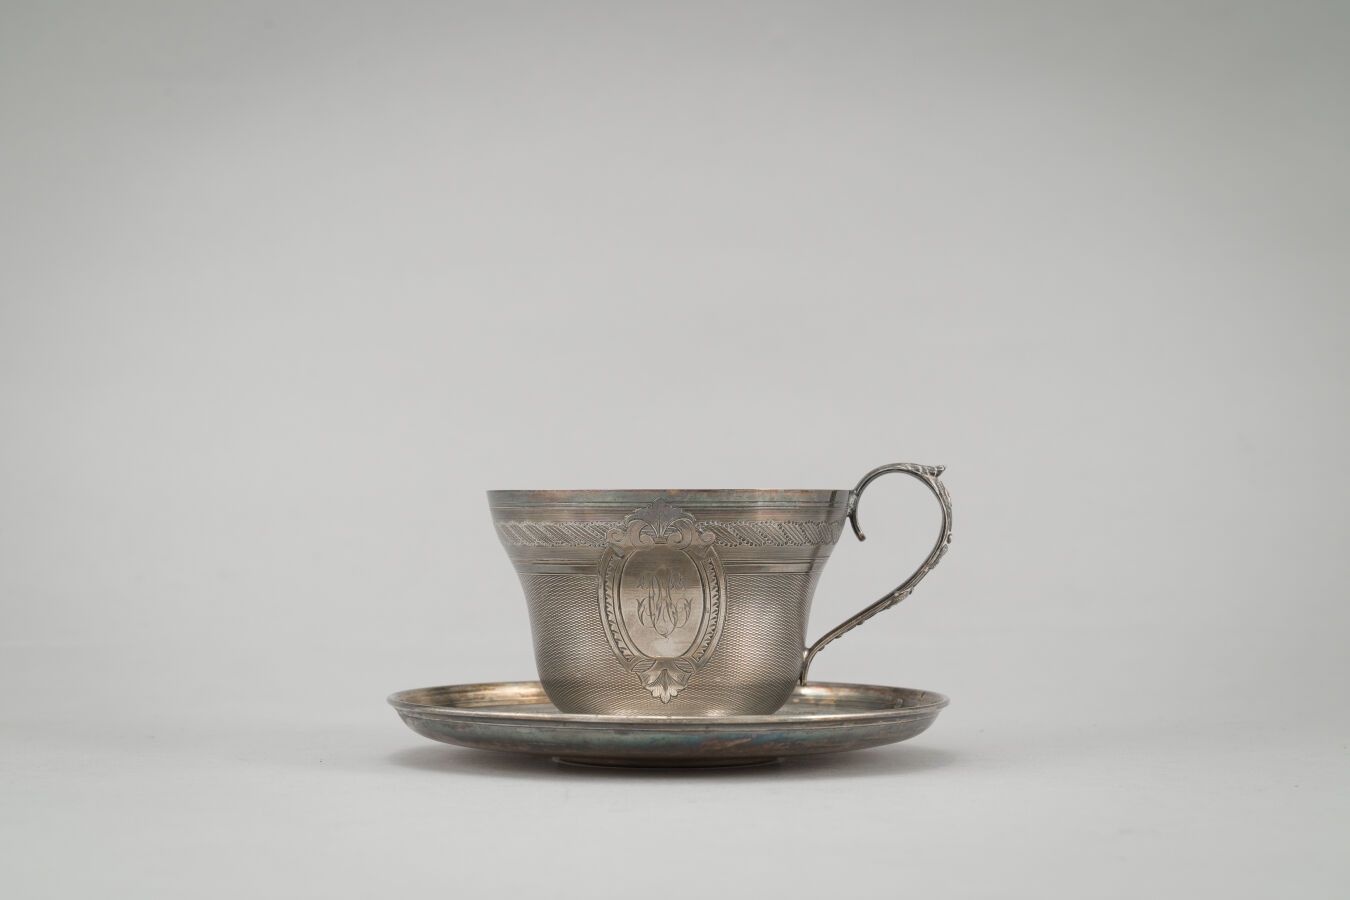 Null 银质杯和碟子（950/1000年），尼罗河背景上的卡图装饰。

重量：293克。

高：6厘米。